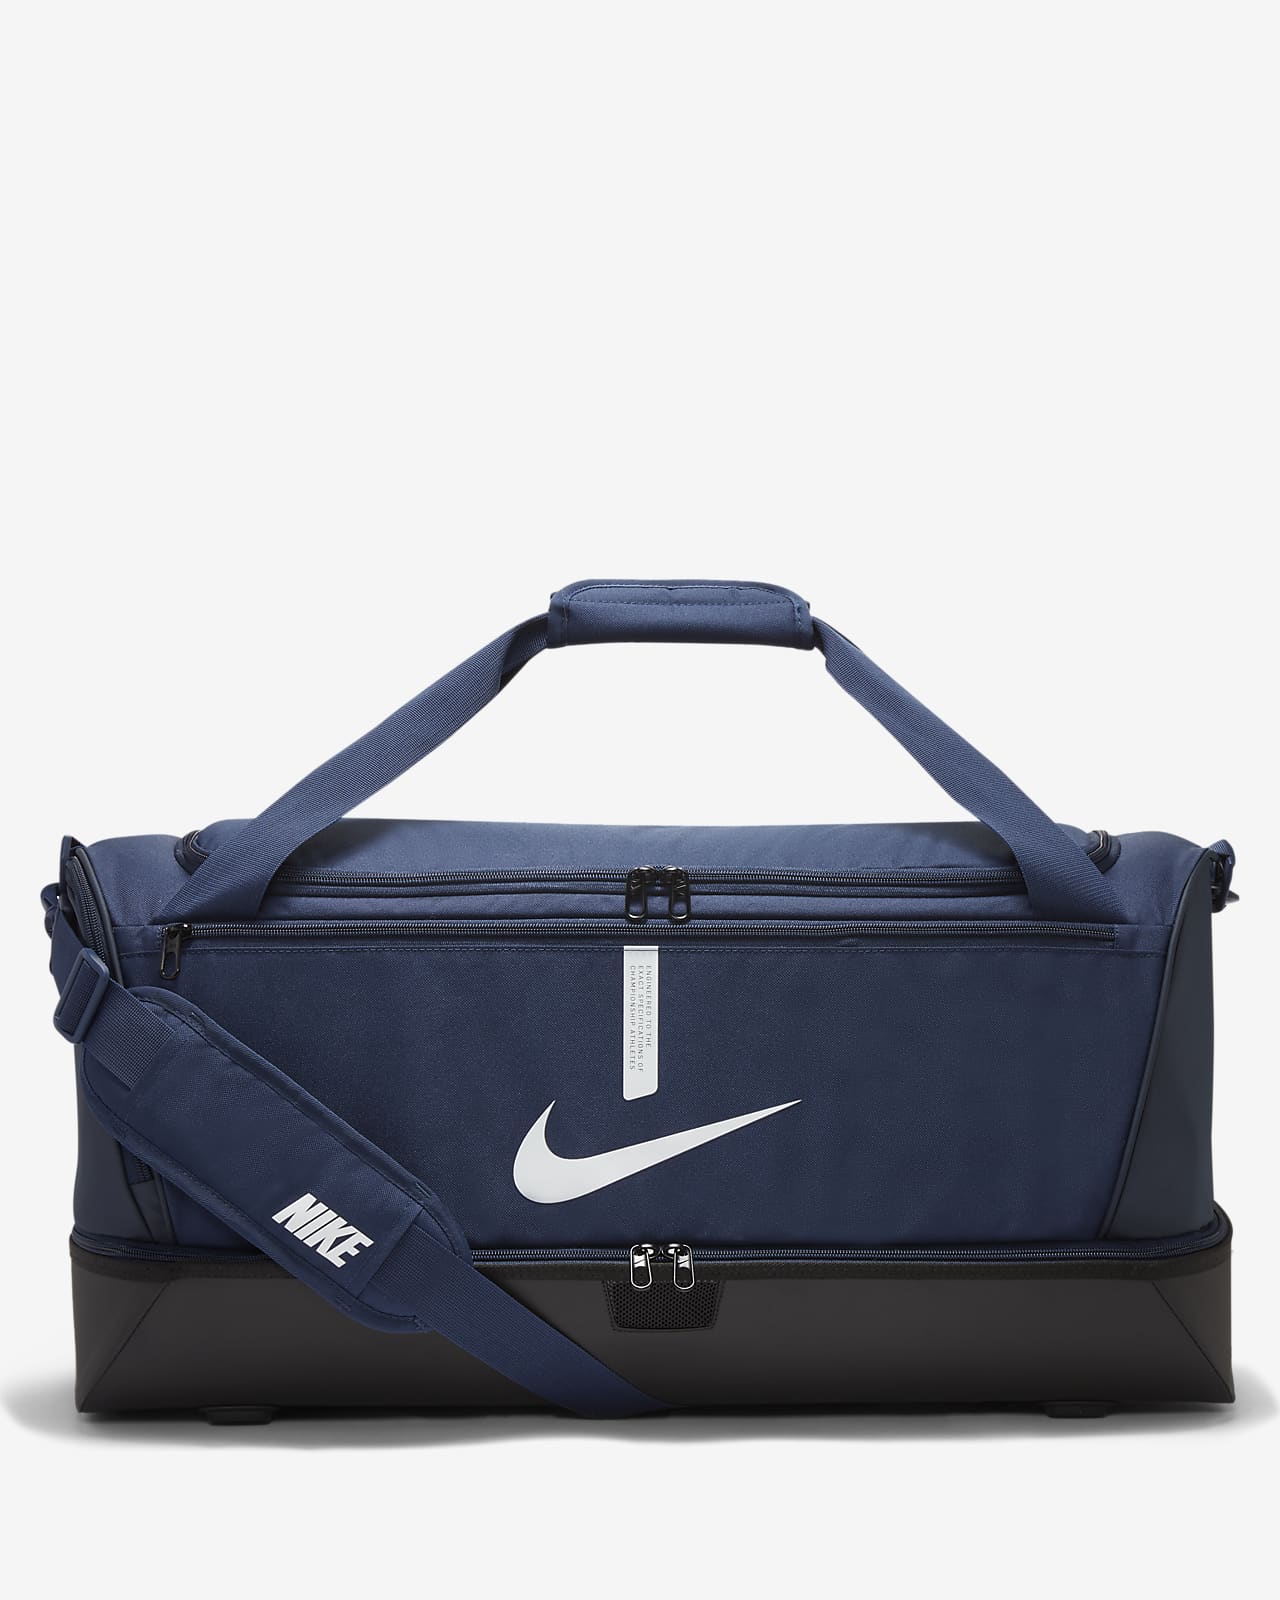 Pevná sportovní taška Nike Academy Team (velká, 59 l)